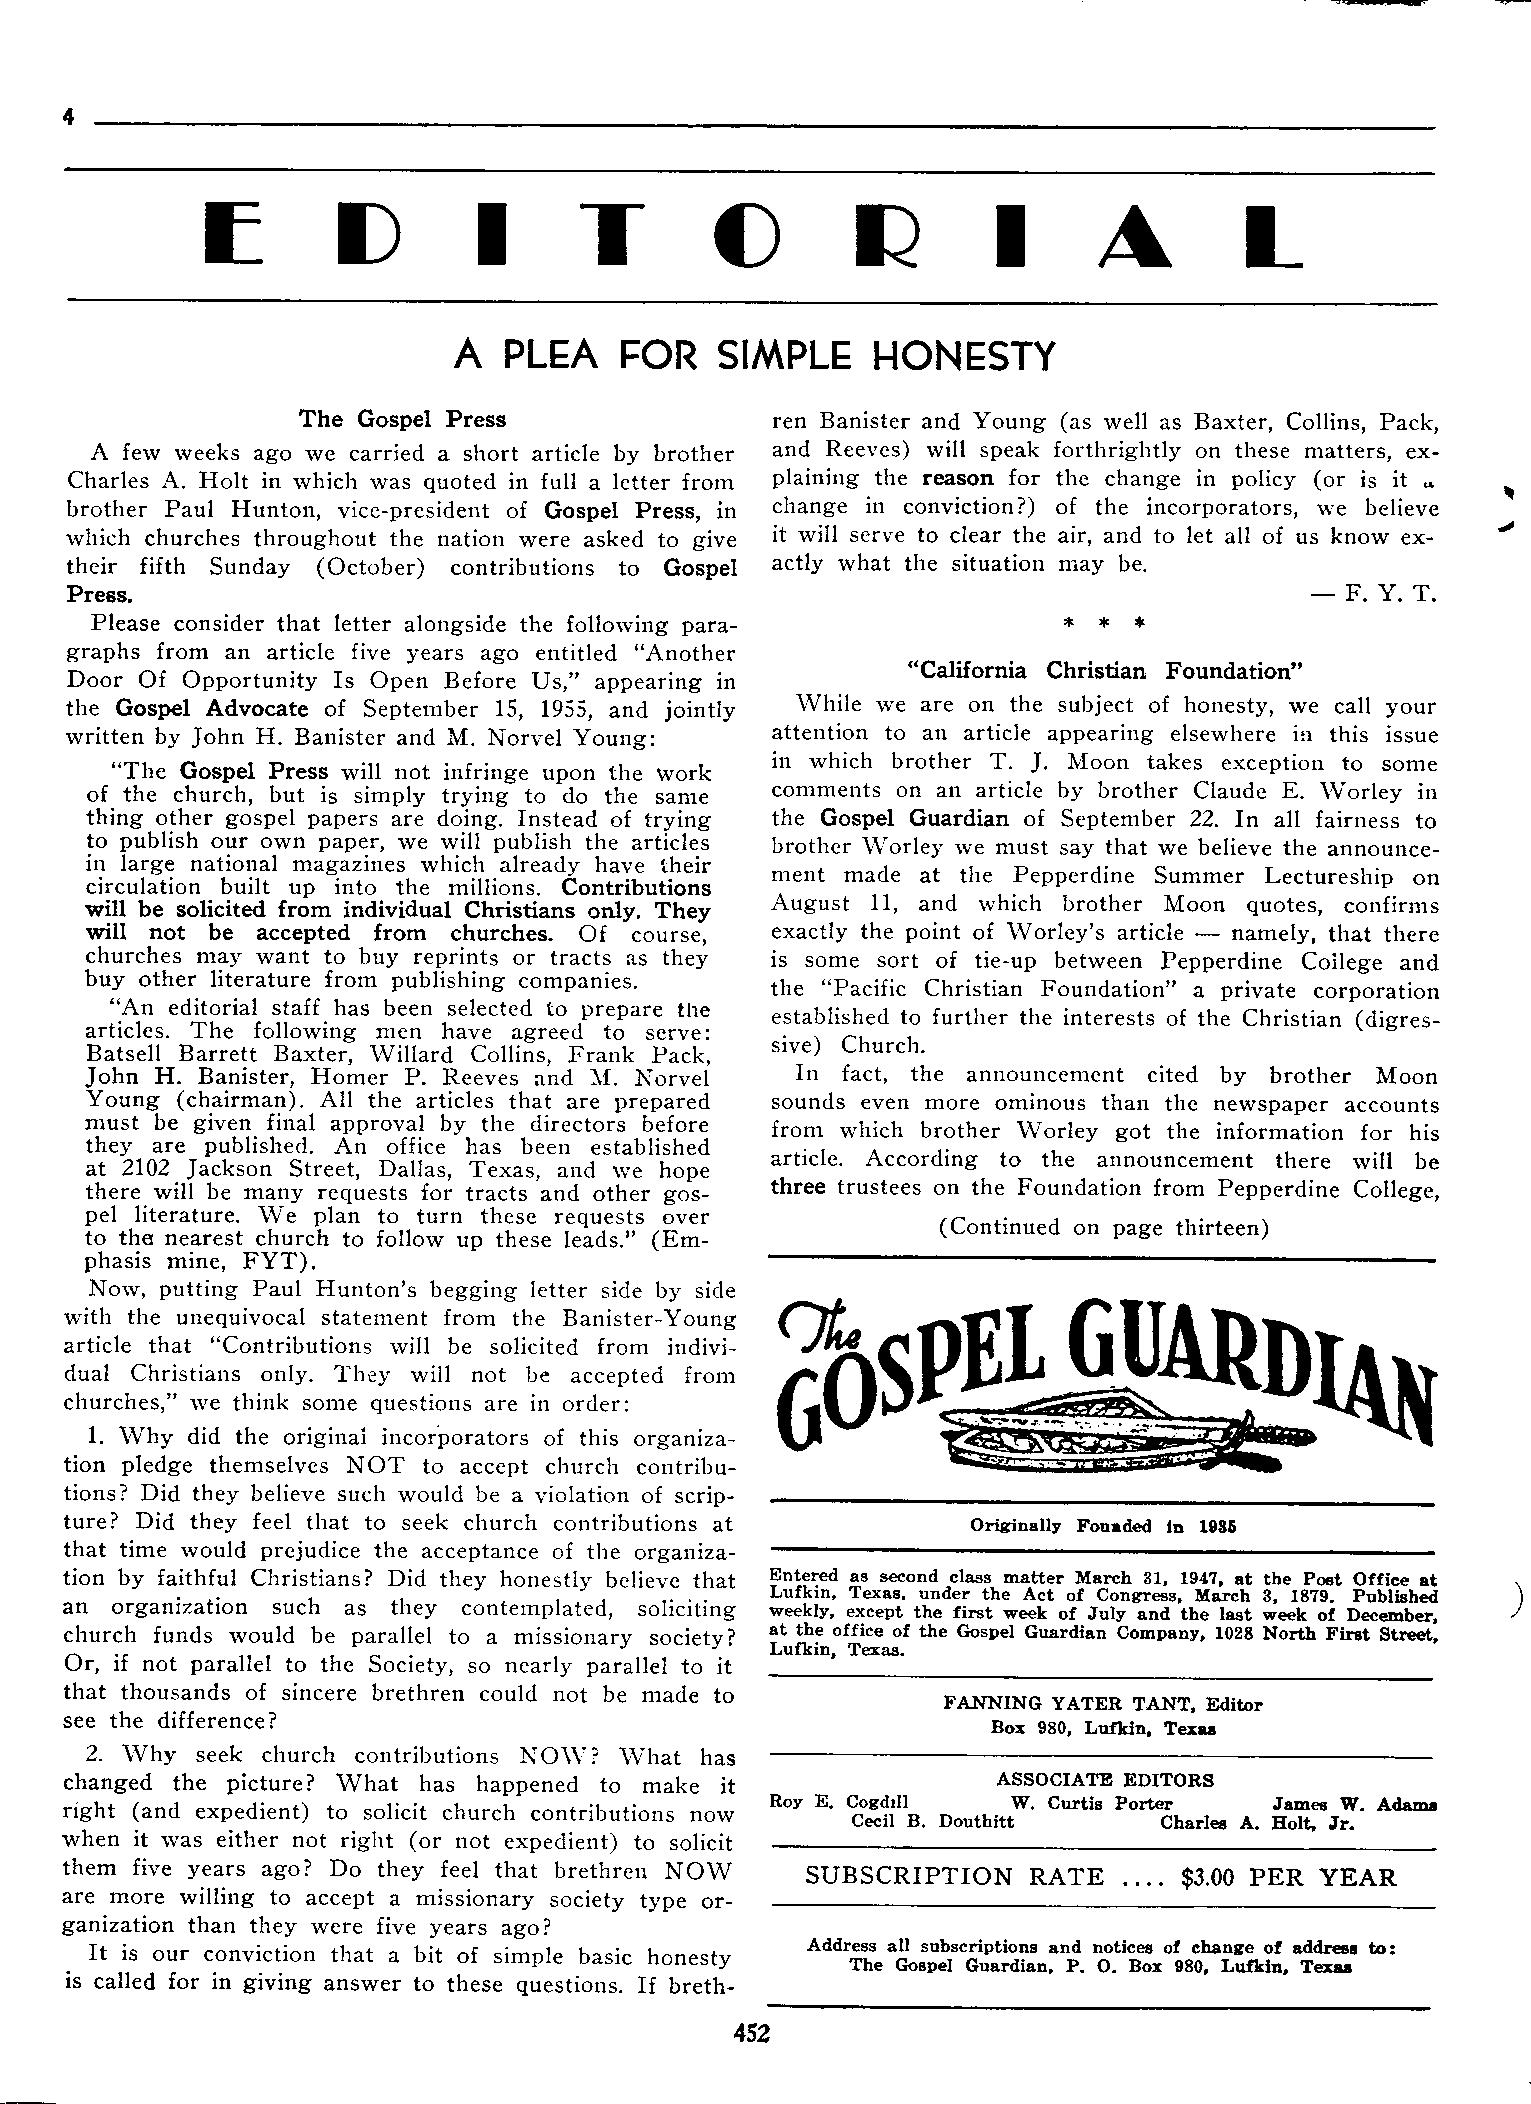 Gospel Guardian Original: Vol.12 No.29 Pg.4